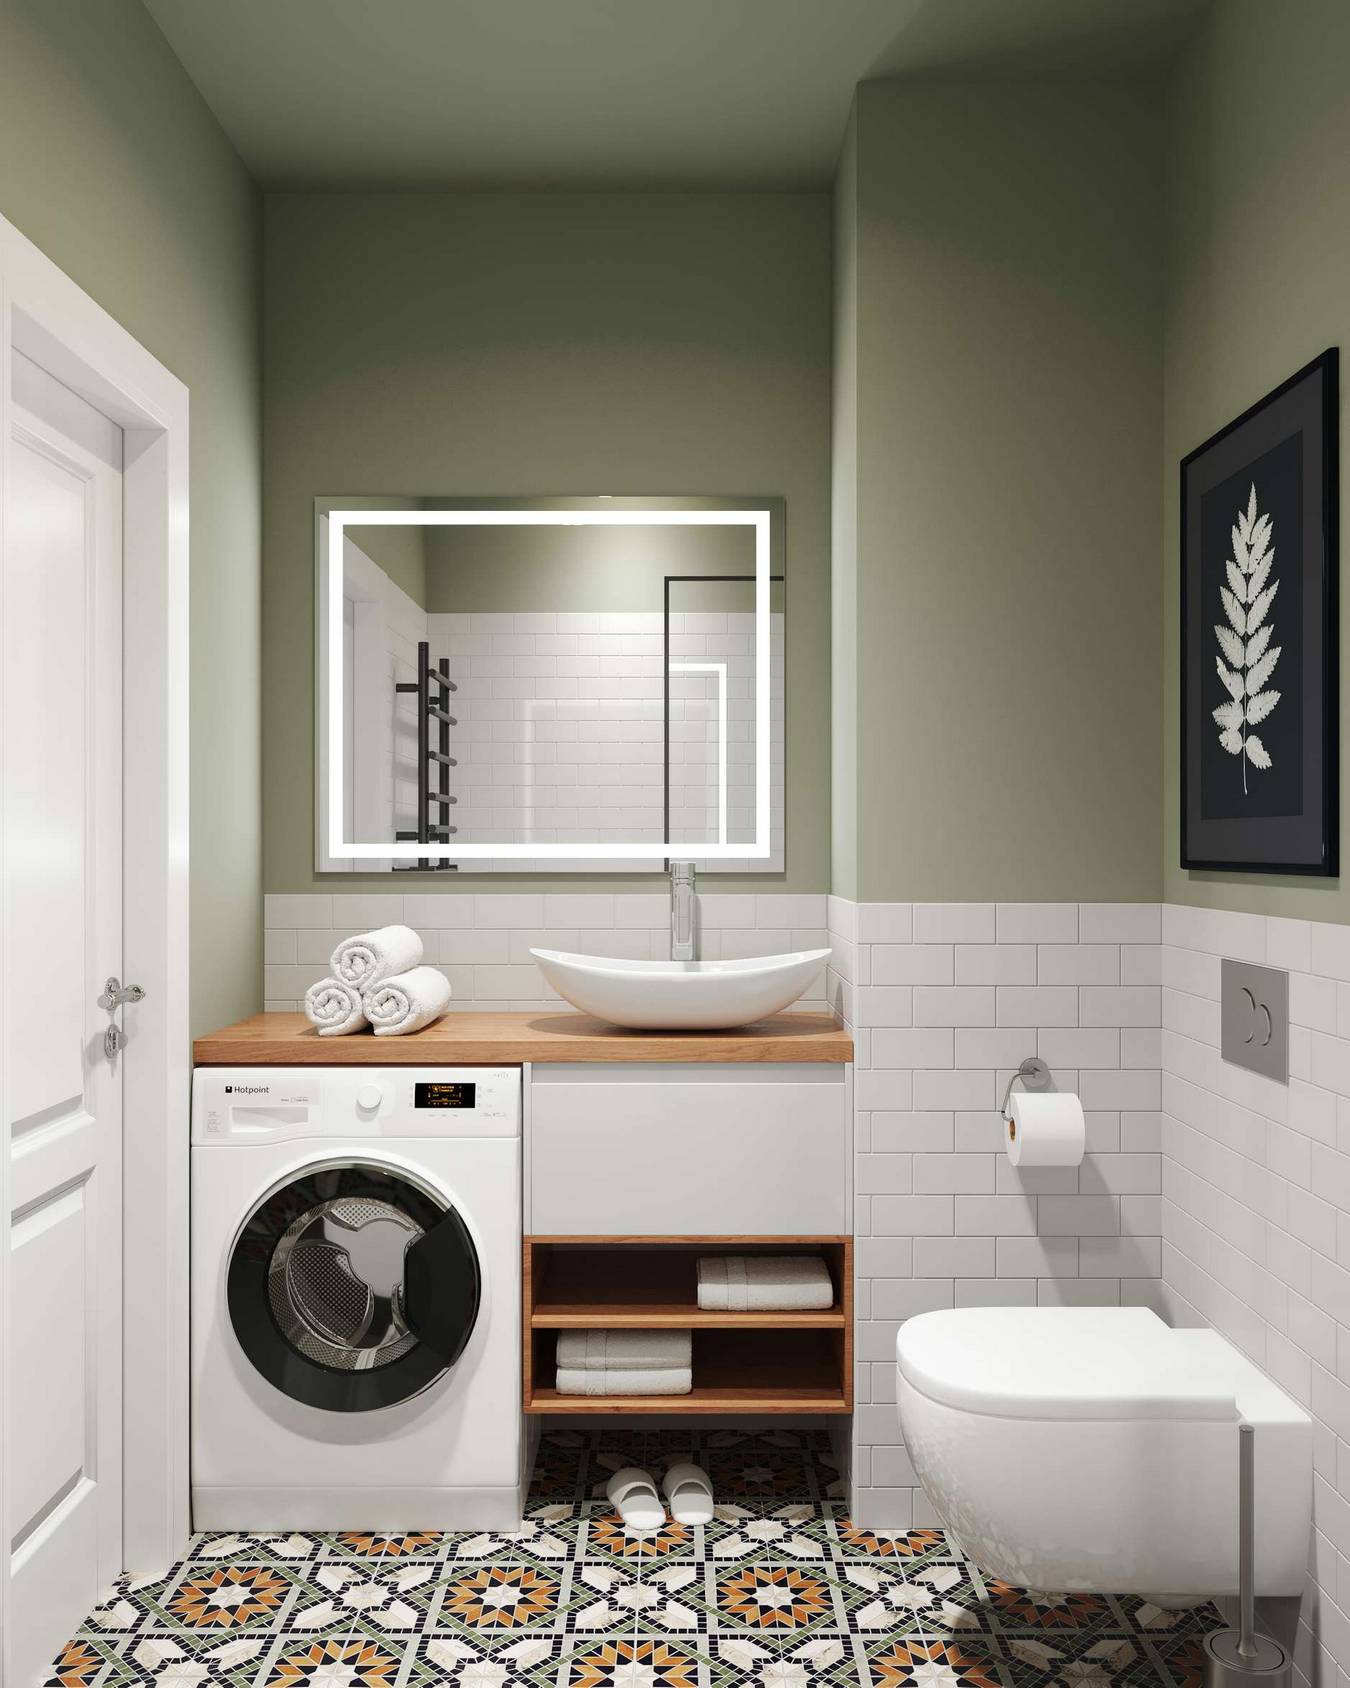 Sàn phòng tắm lát gạch bông họa tiết hình học nổi bật, máy giặt được sắp xếp gọn vào một góc bên cạnh tủ lưu trữ kết hợp bồn rửa. Tấm gương hình chữ nhật khổ lớn trên tường giúp 'cơi nới' không gian'.